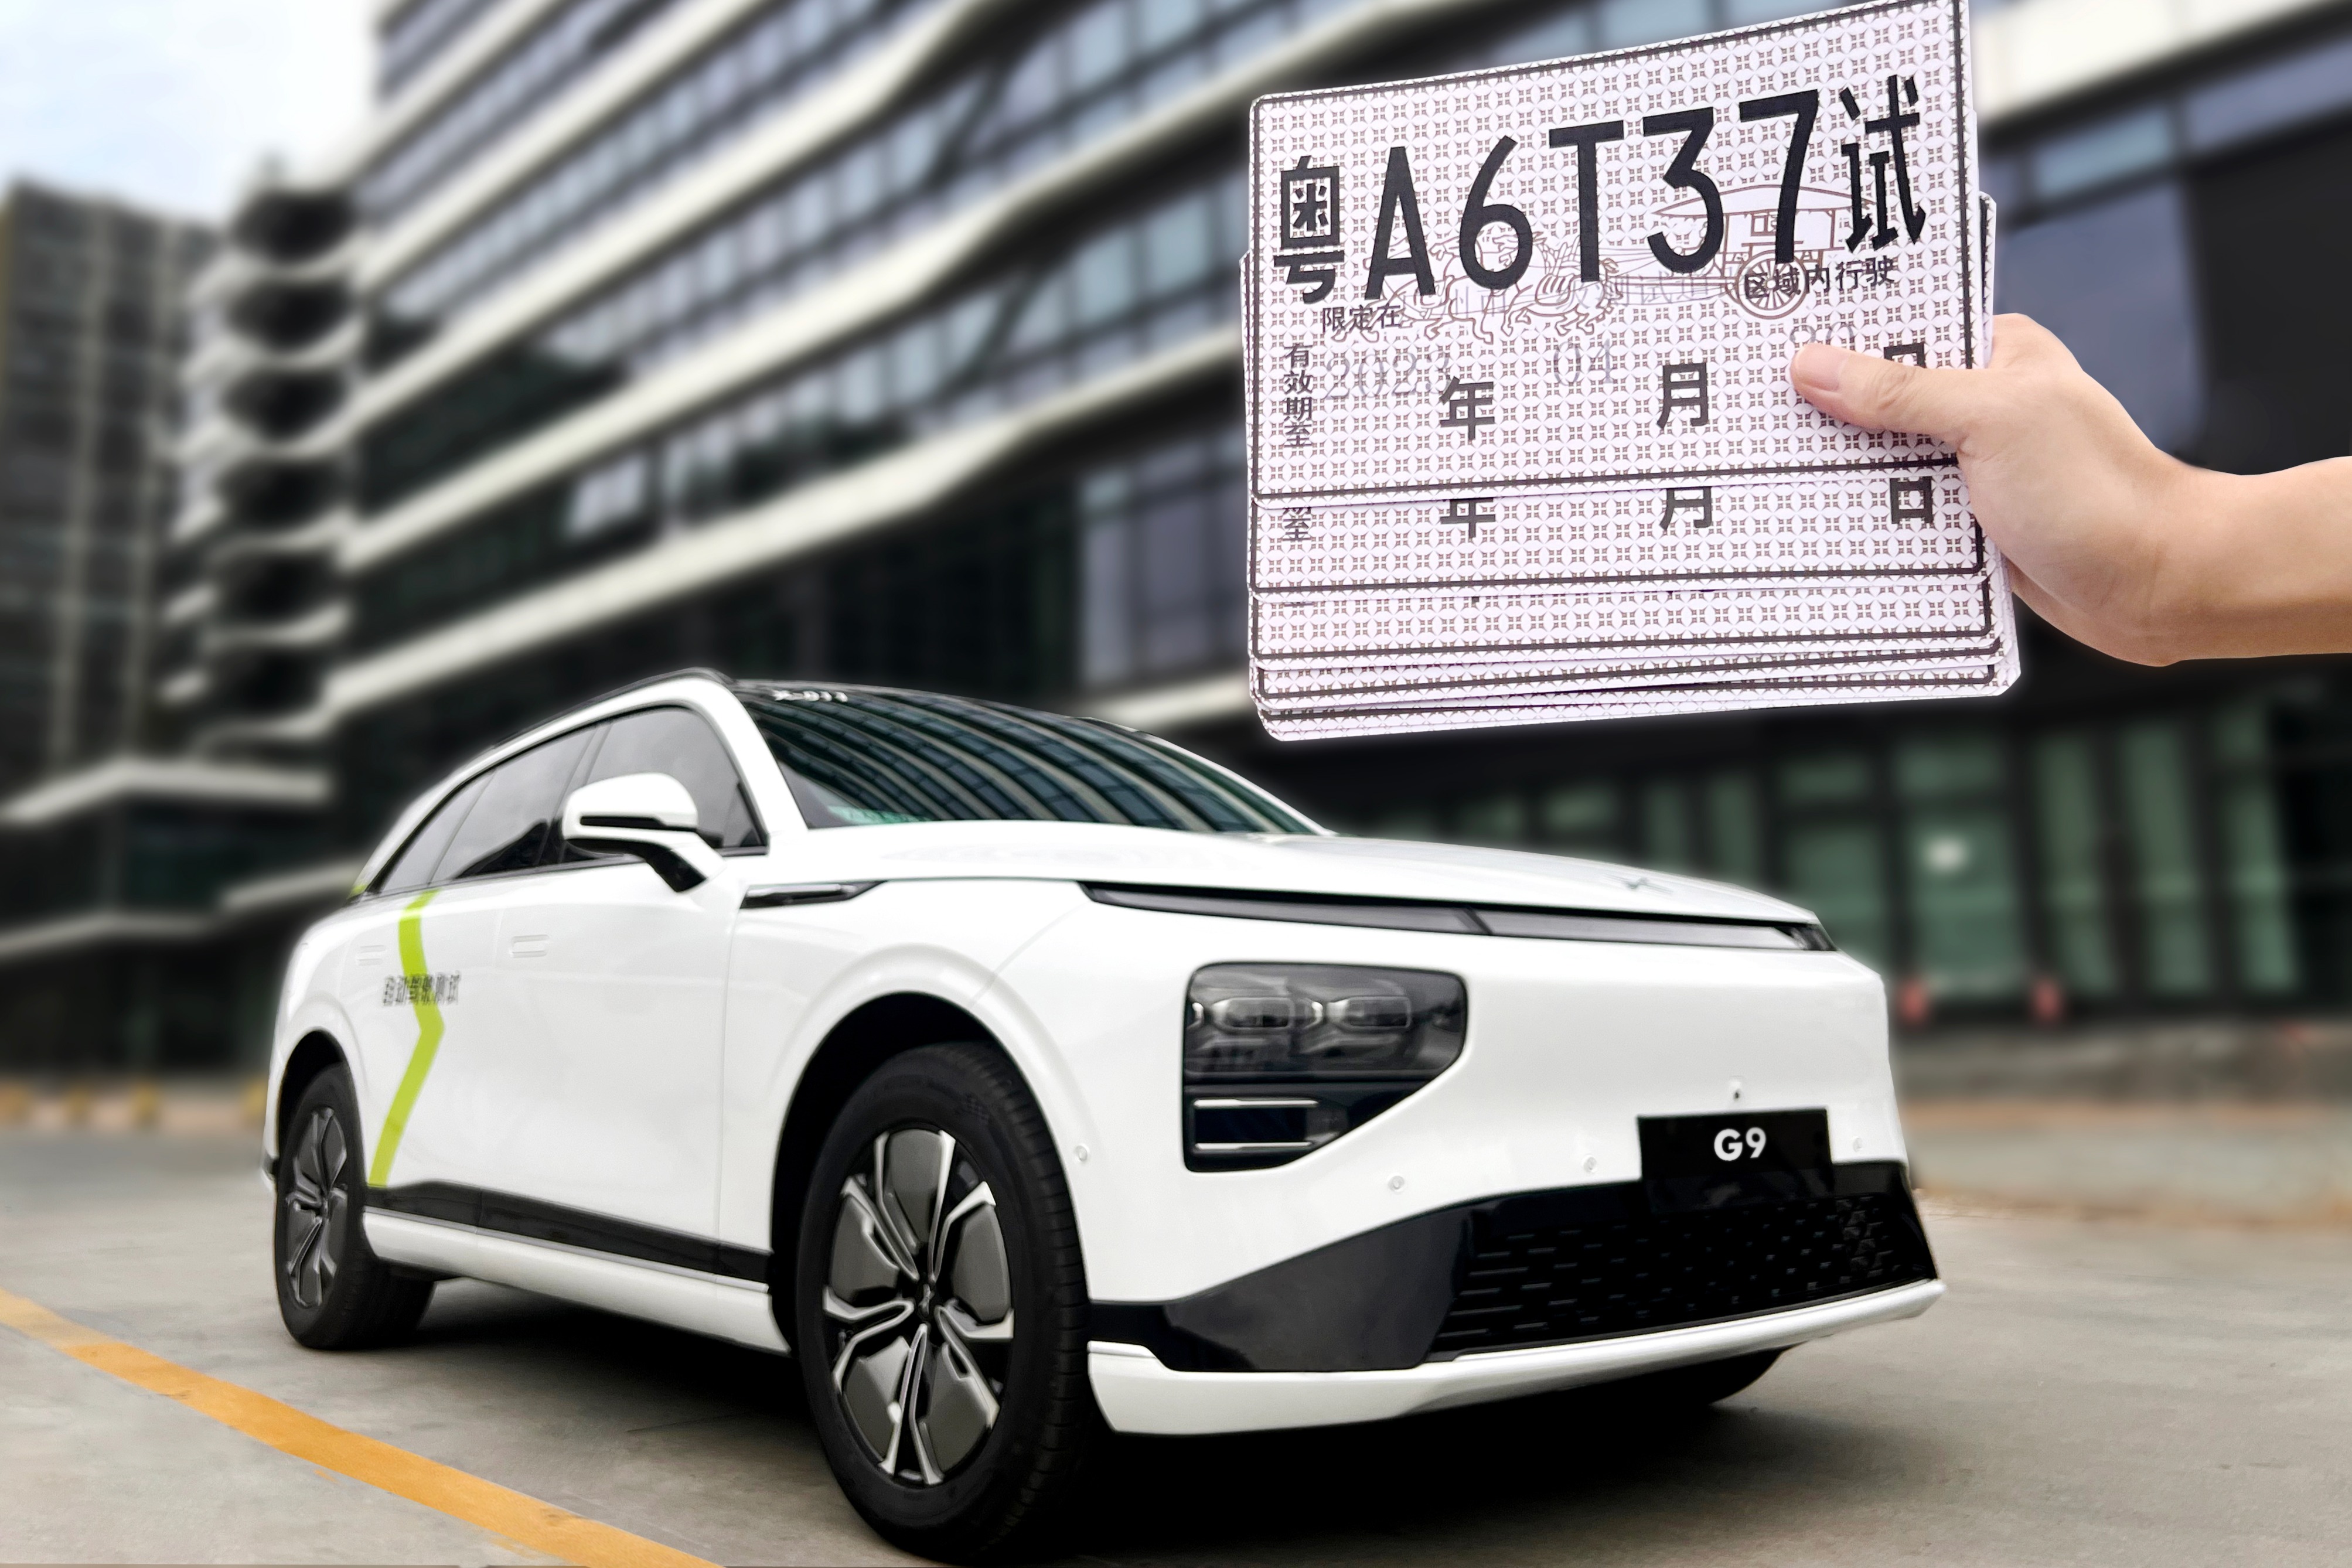 向Robotaxi载客商业化运营迈进，小鹏G9获广州自动驾驶路测资格